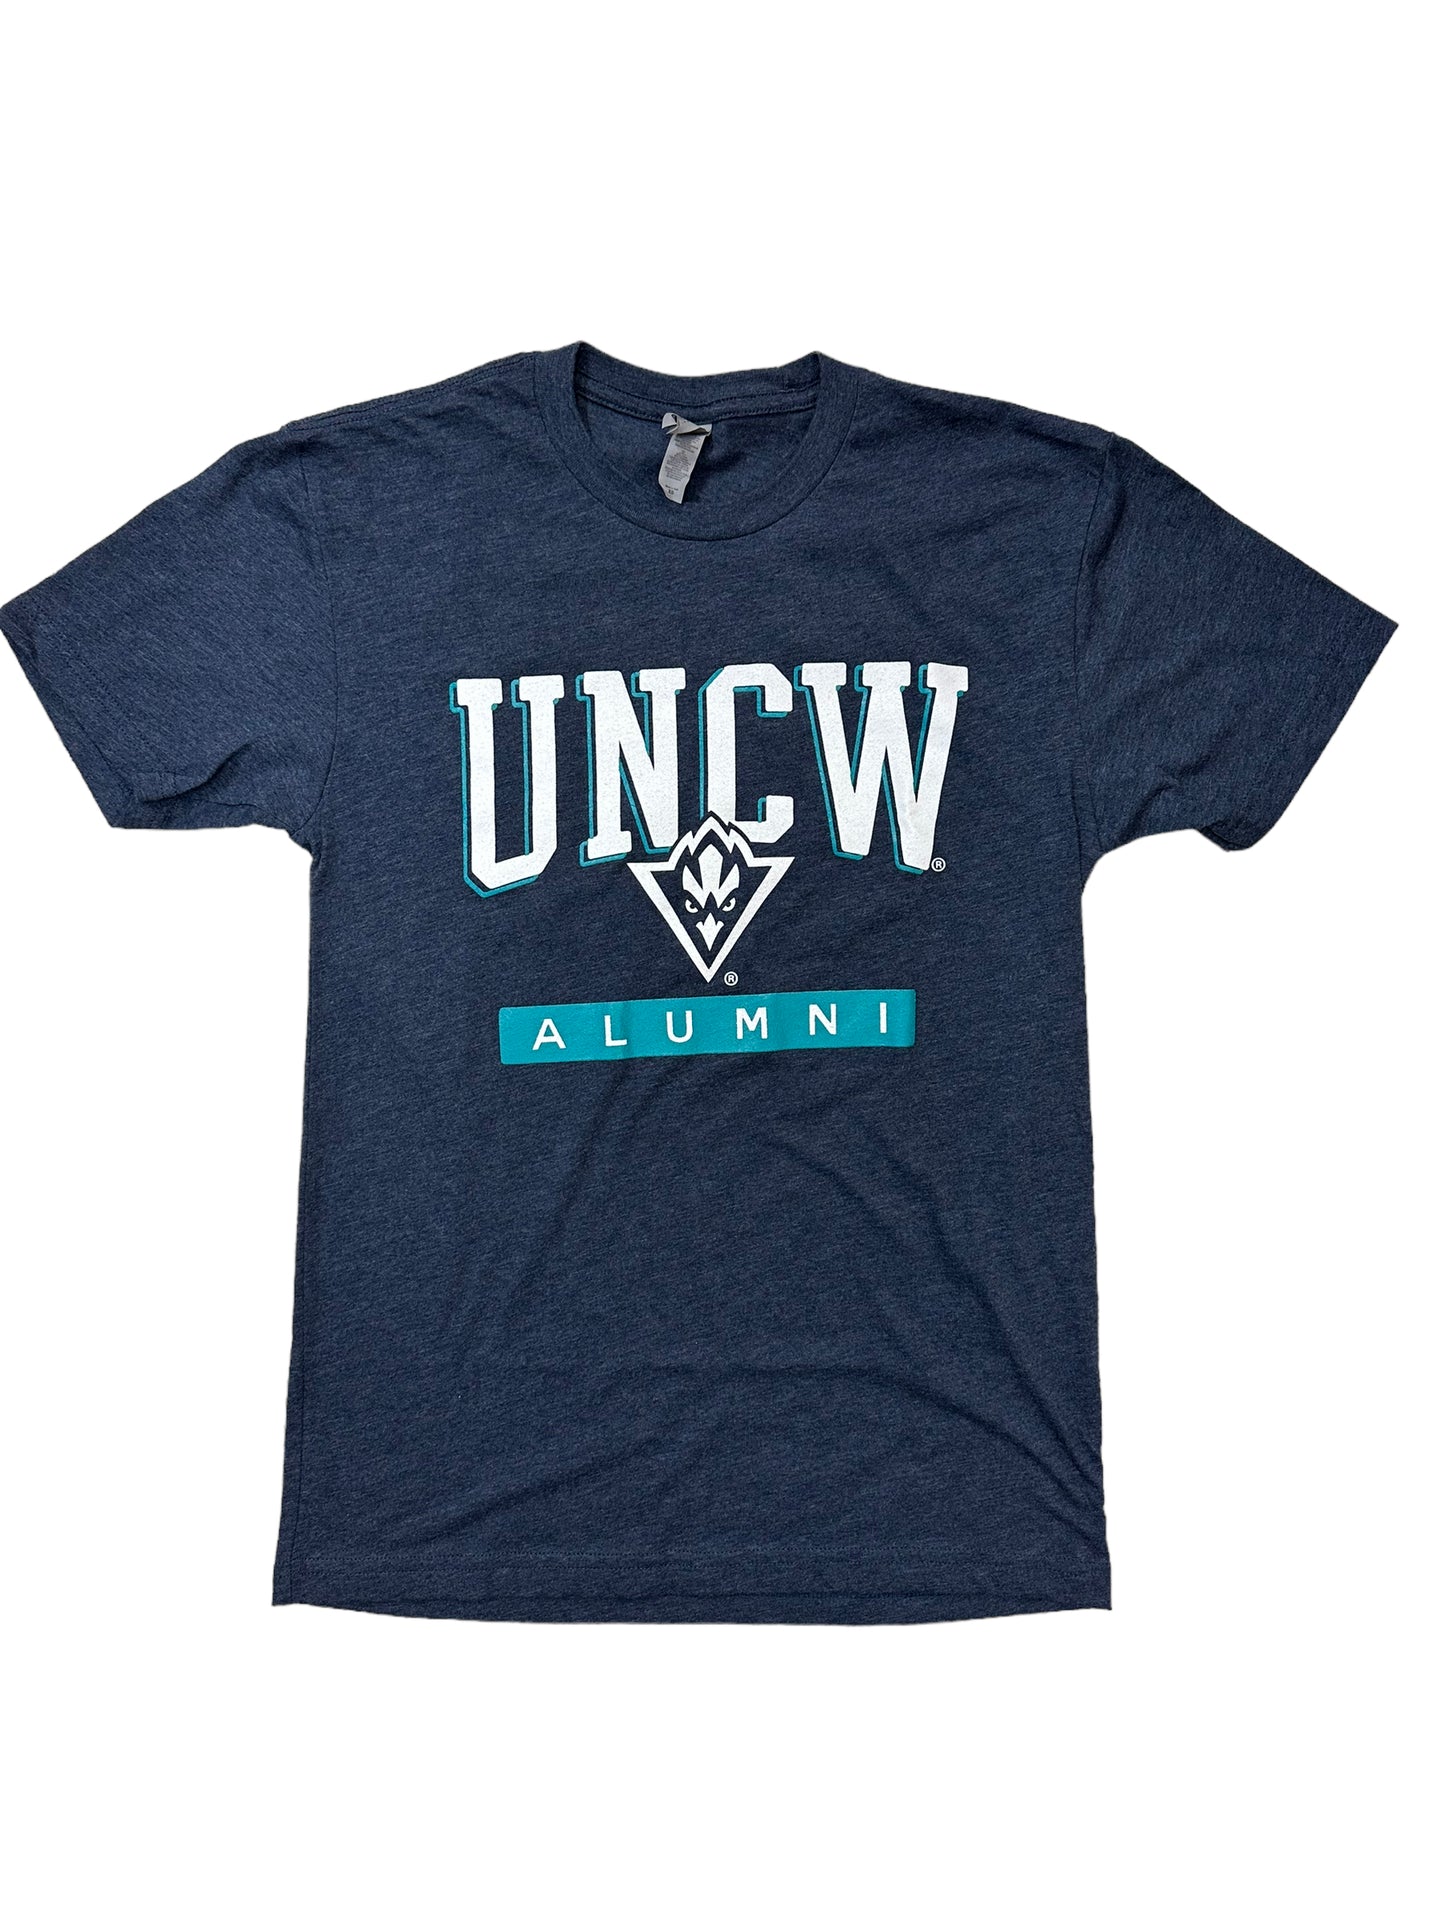 Uncw Alumni  - T Shirt - Midnight Navy